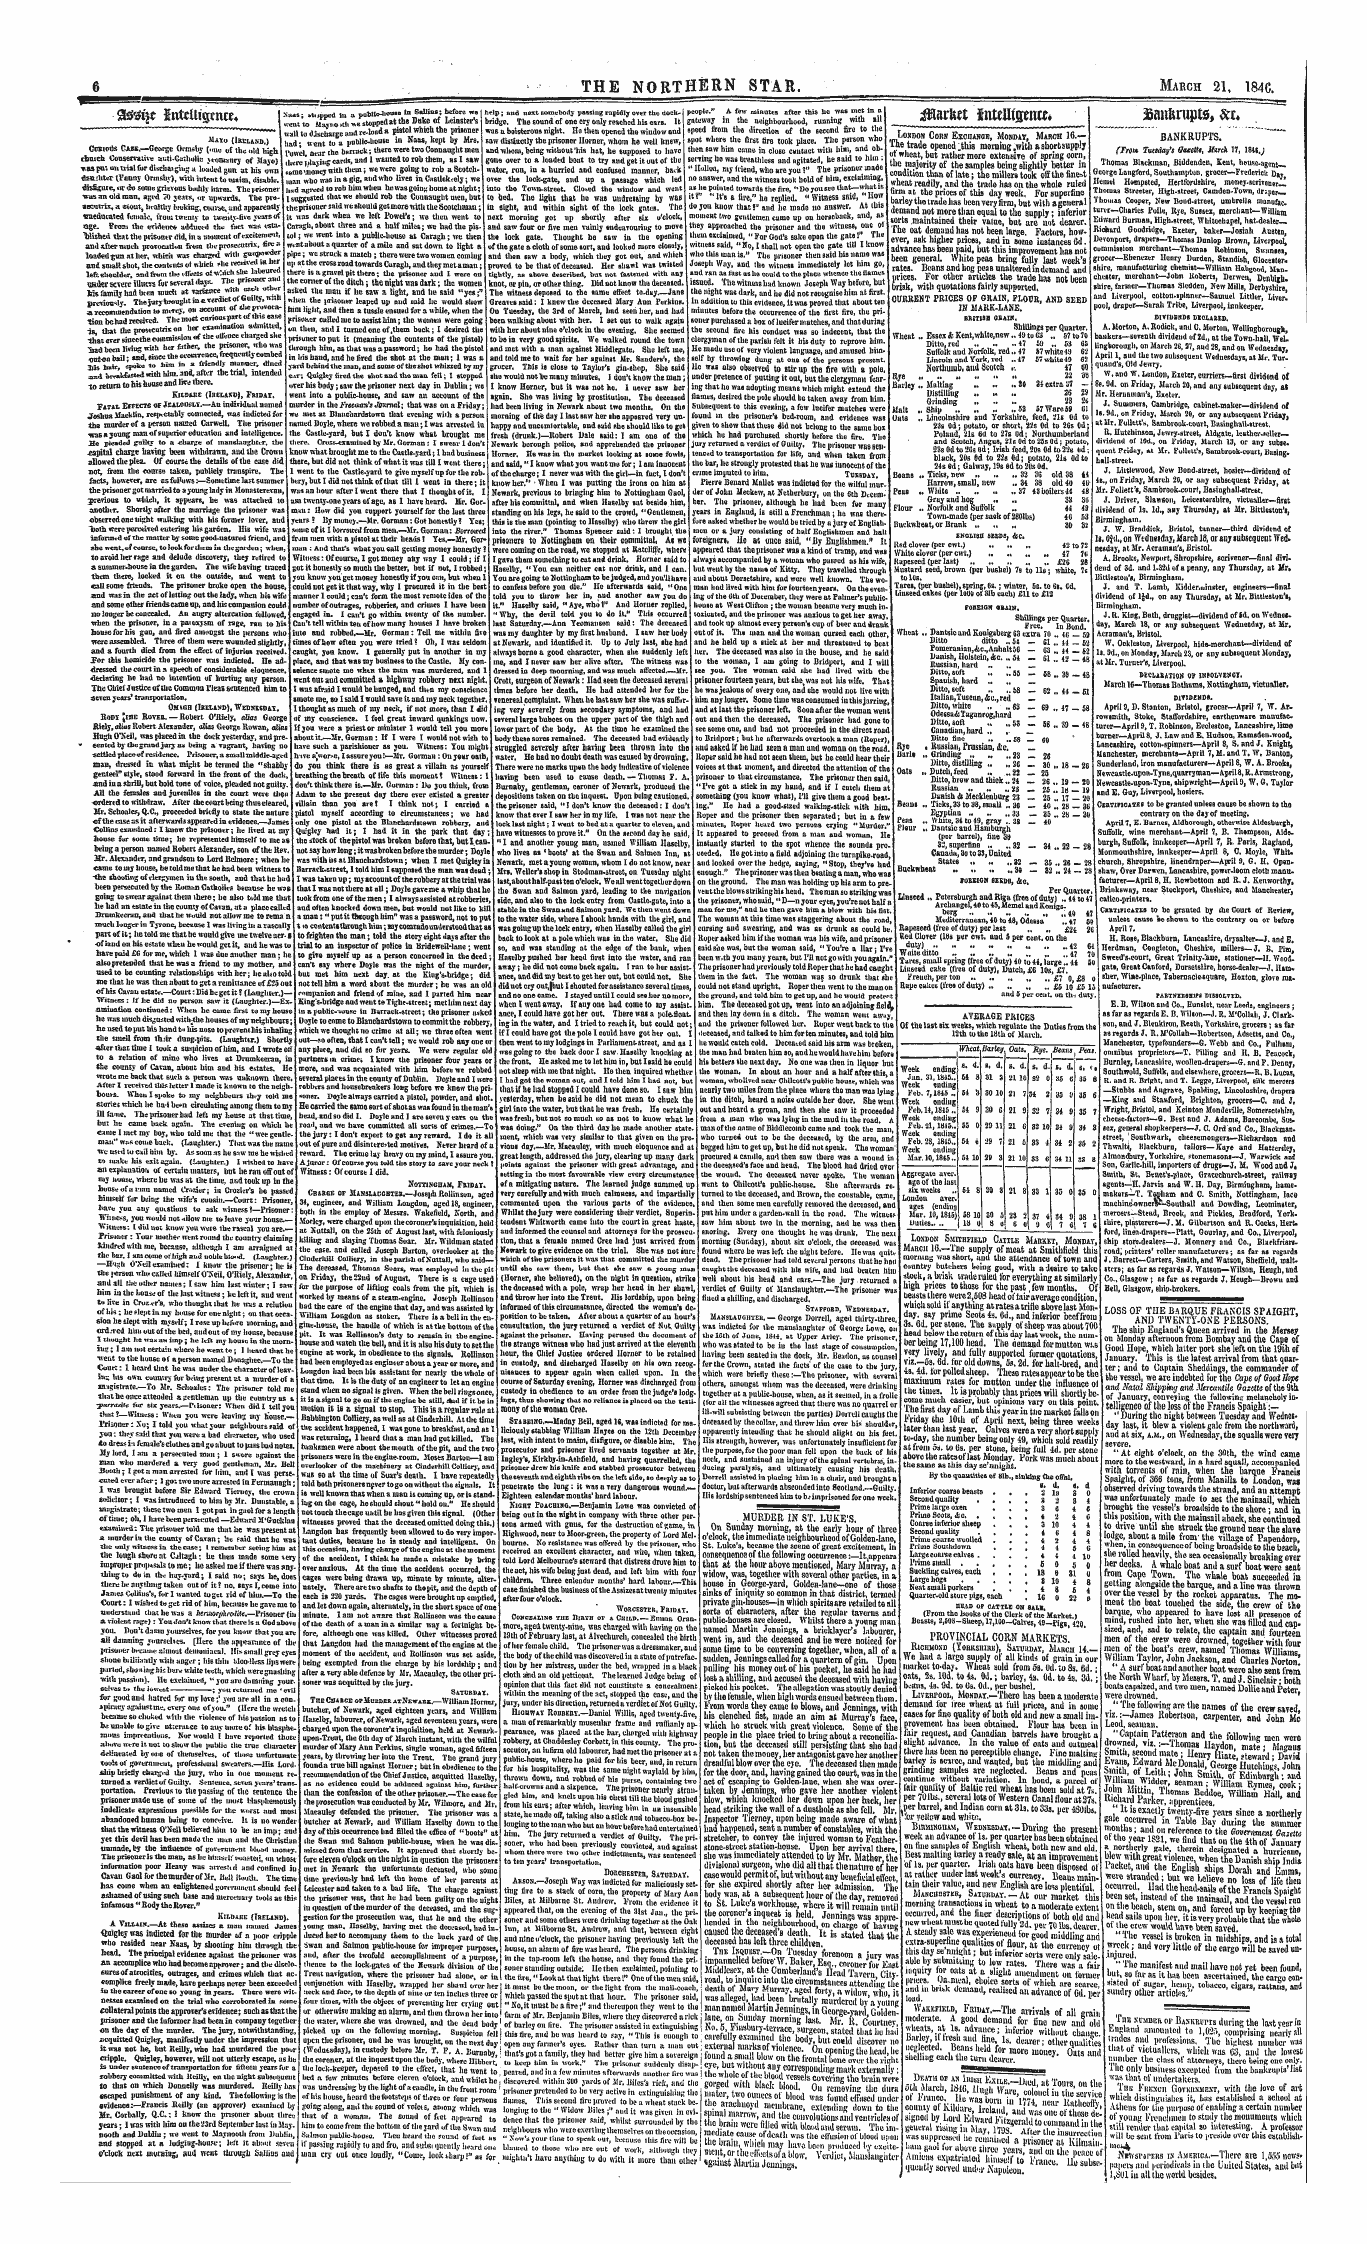 Northern Star (1837-1852): jS F Y, 1st edition - 3d$$? Sitteuignur*